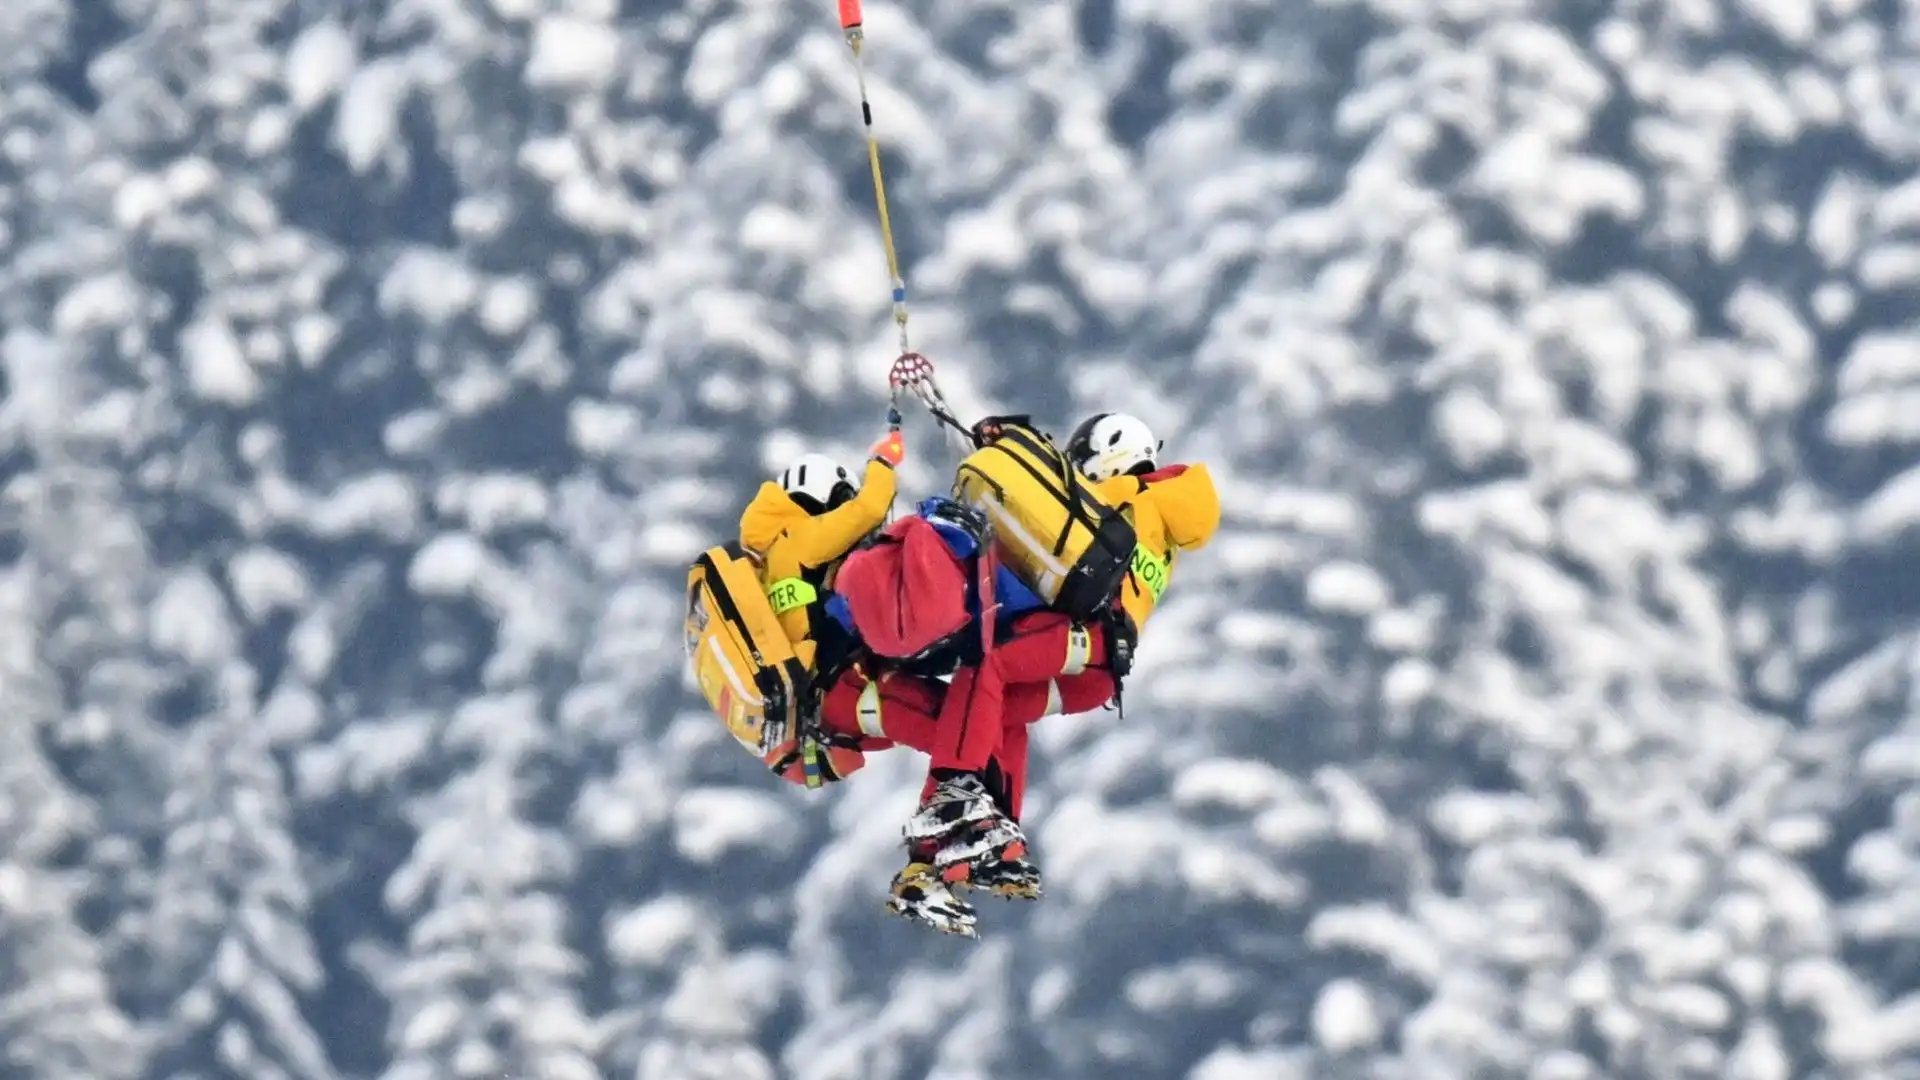 I medici hanno trasportato lo sciatore all'ospedale per capire meglio la gravità dell'infortunio